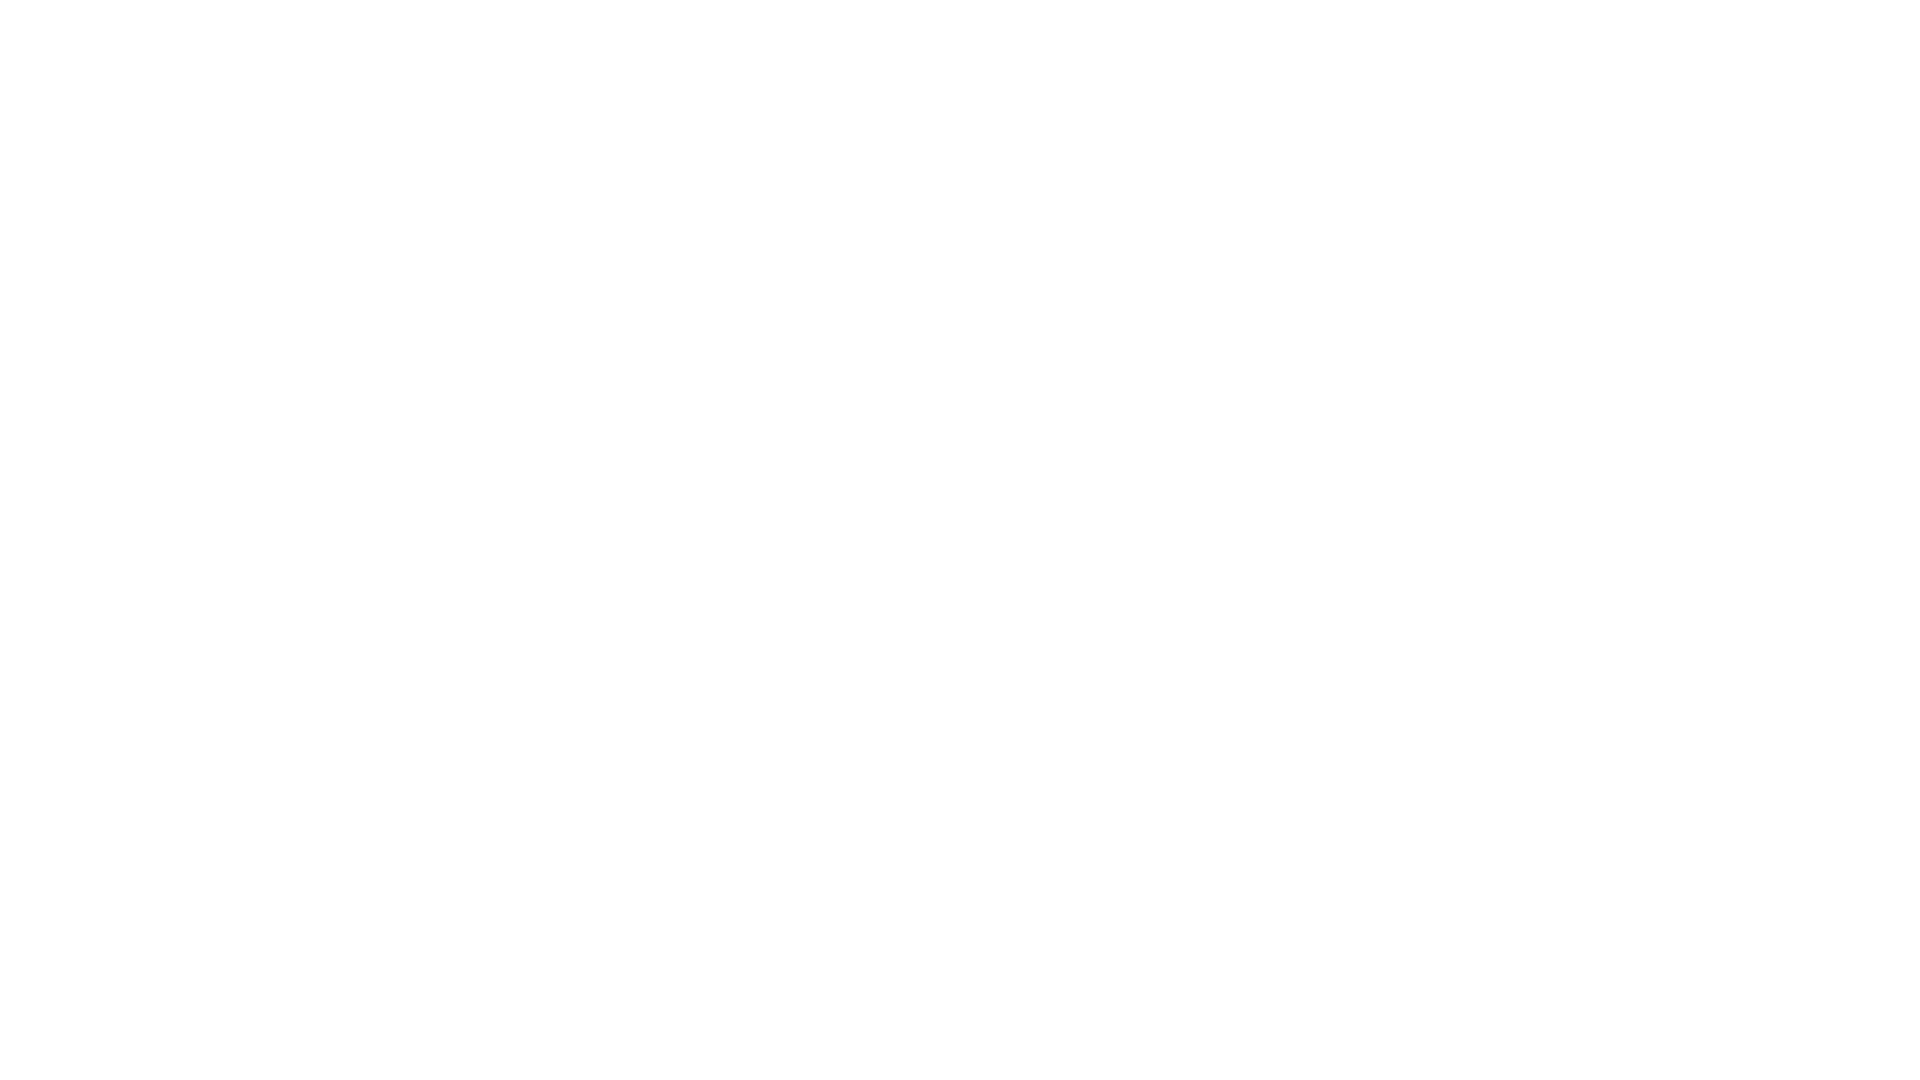 The Paul Mirfin Band